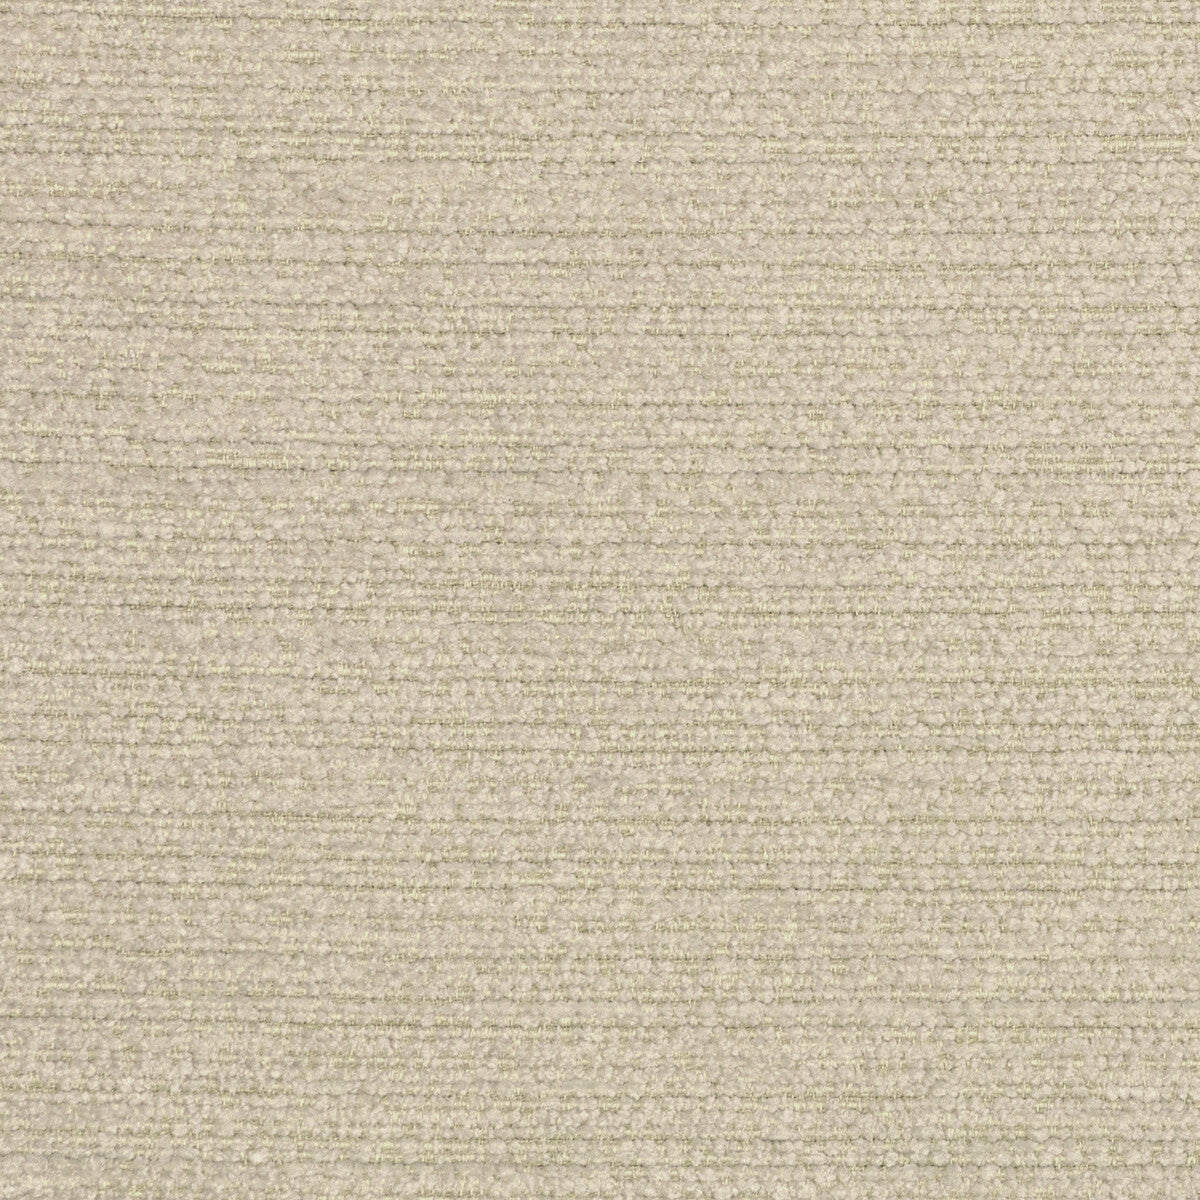 Kravet Design fabric in 36121-16 color - pattern 36121.16.0 - by Kravet Design